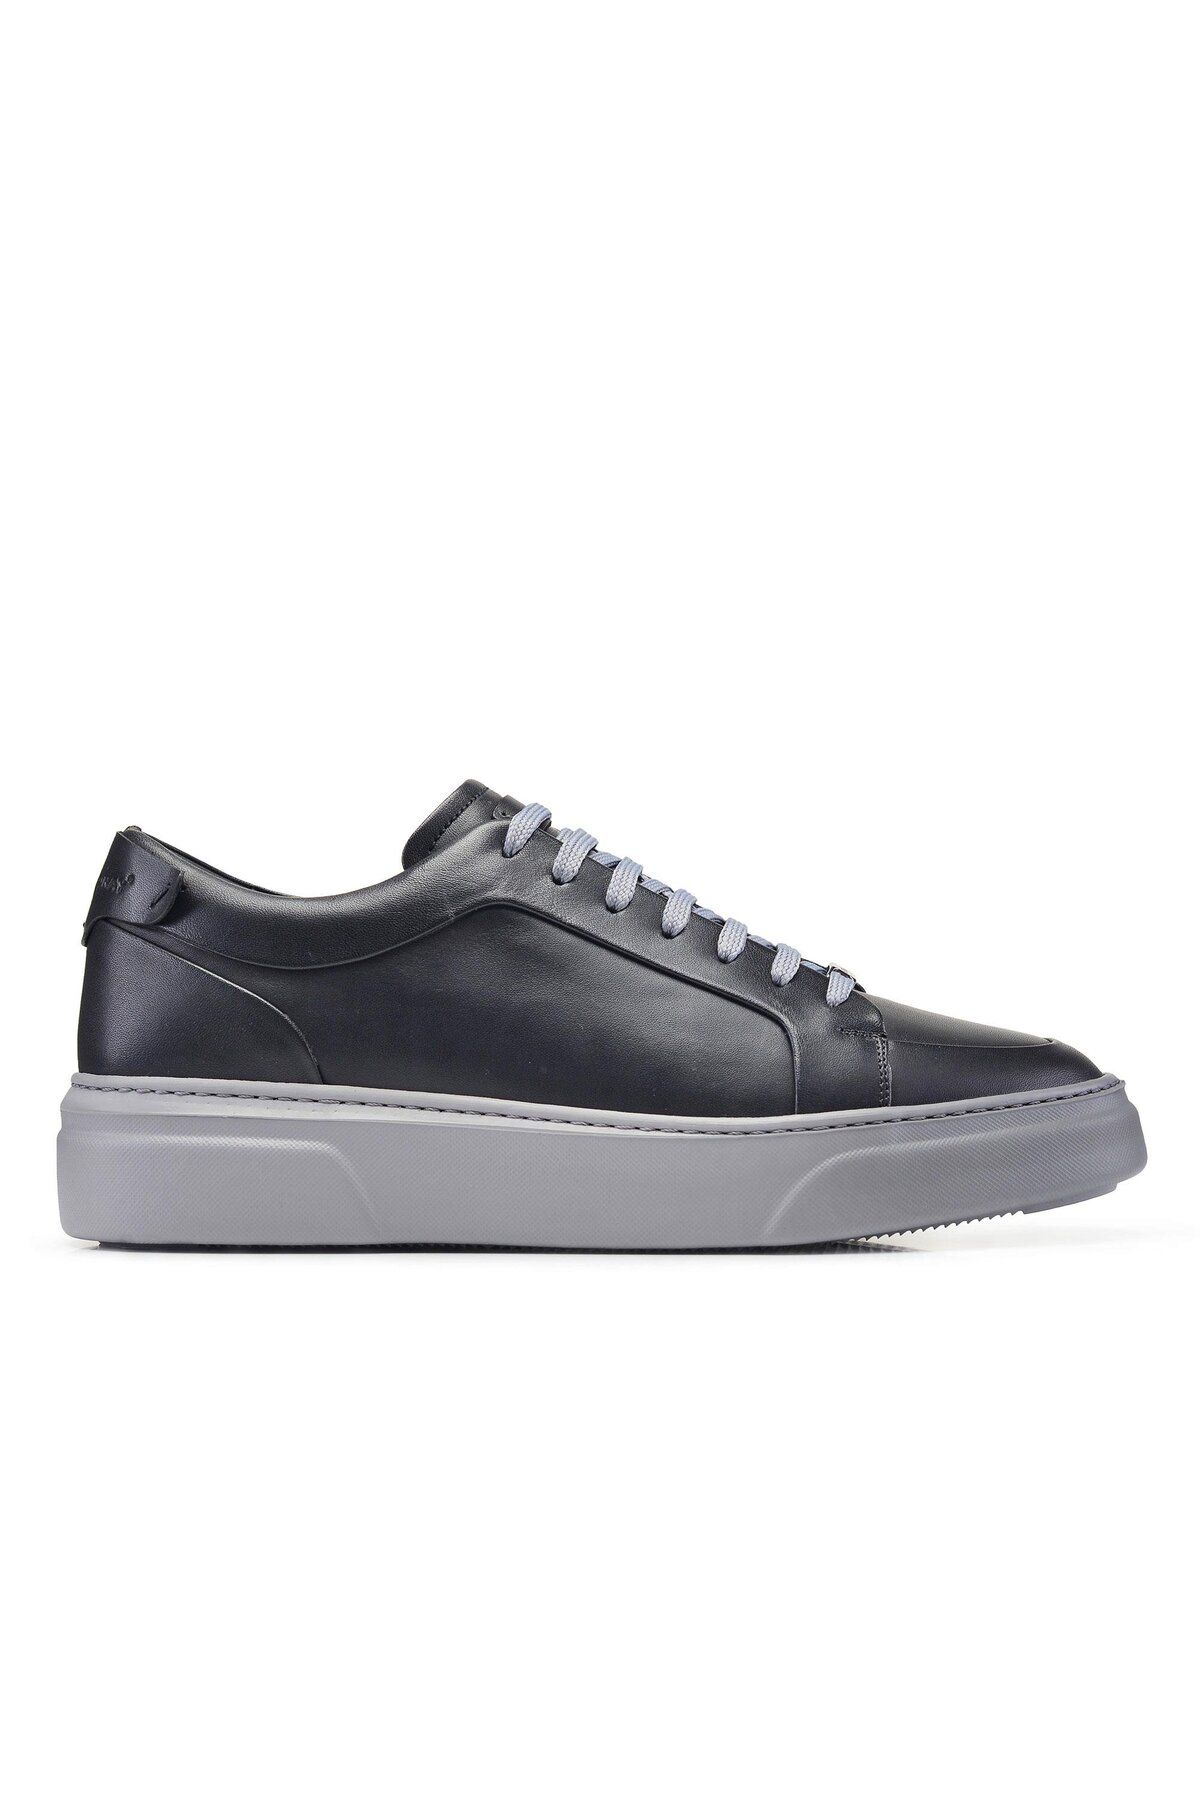 Nevzat Onay Siyah Bağcıklı Sneaker Erkek Ayakkabı -92113-